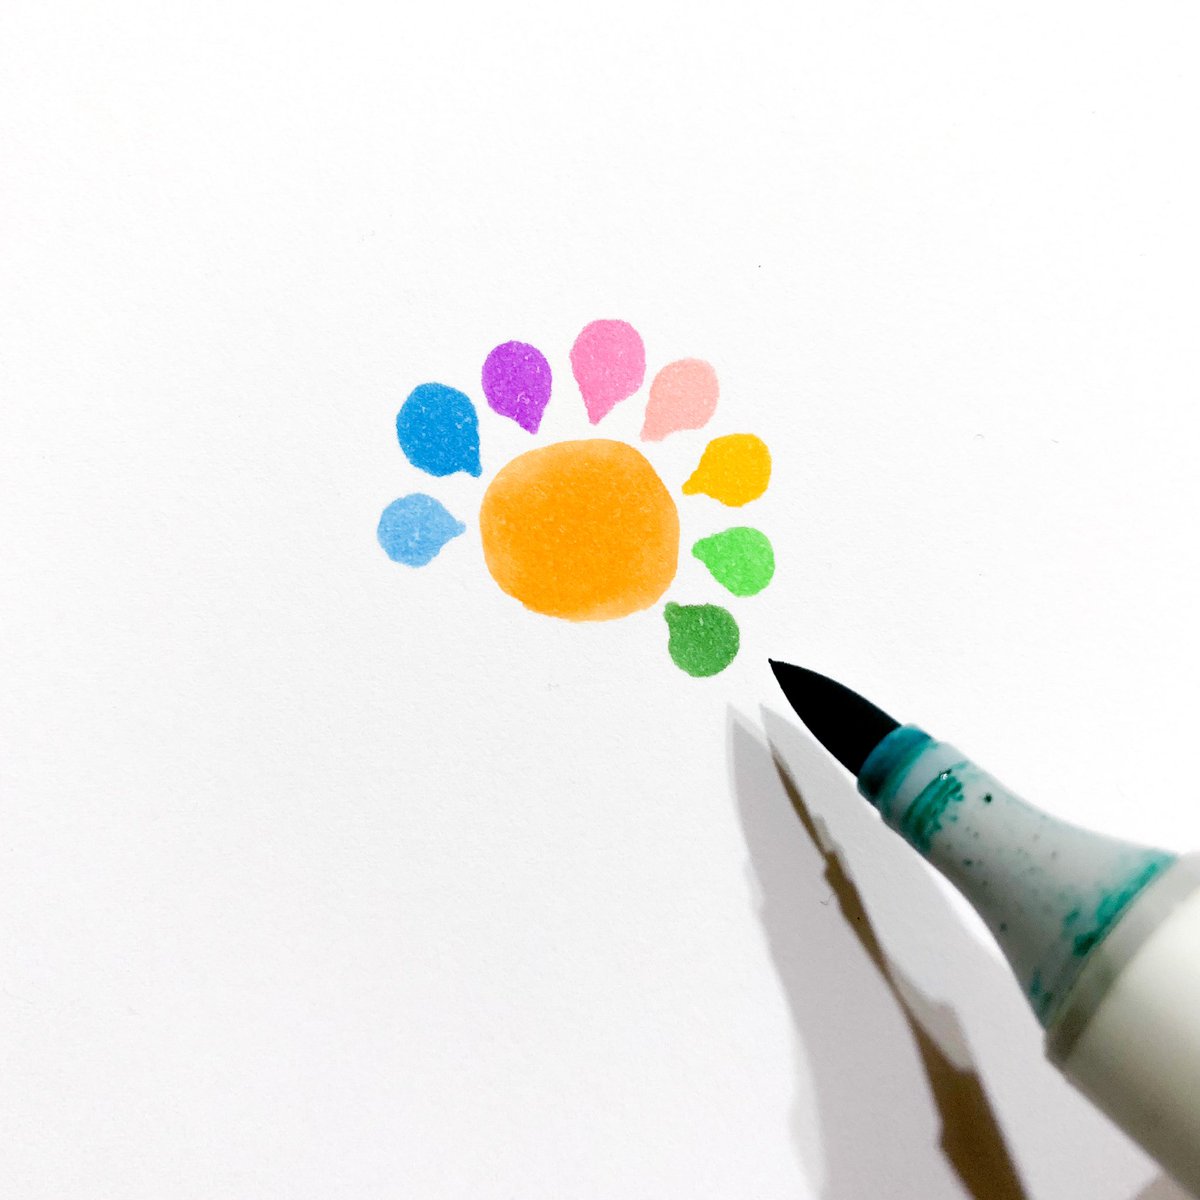 「コピックと色鉛筆で簡単に作れるテクスチャー。 」|窪之内 Eisaku 英策のイラスト